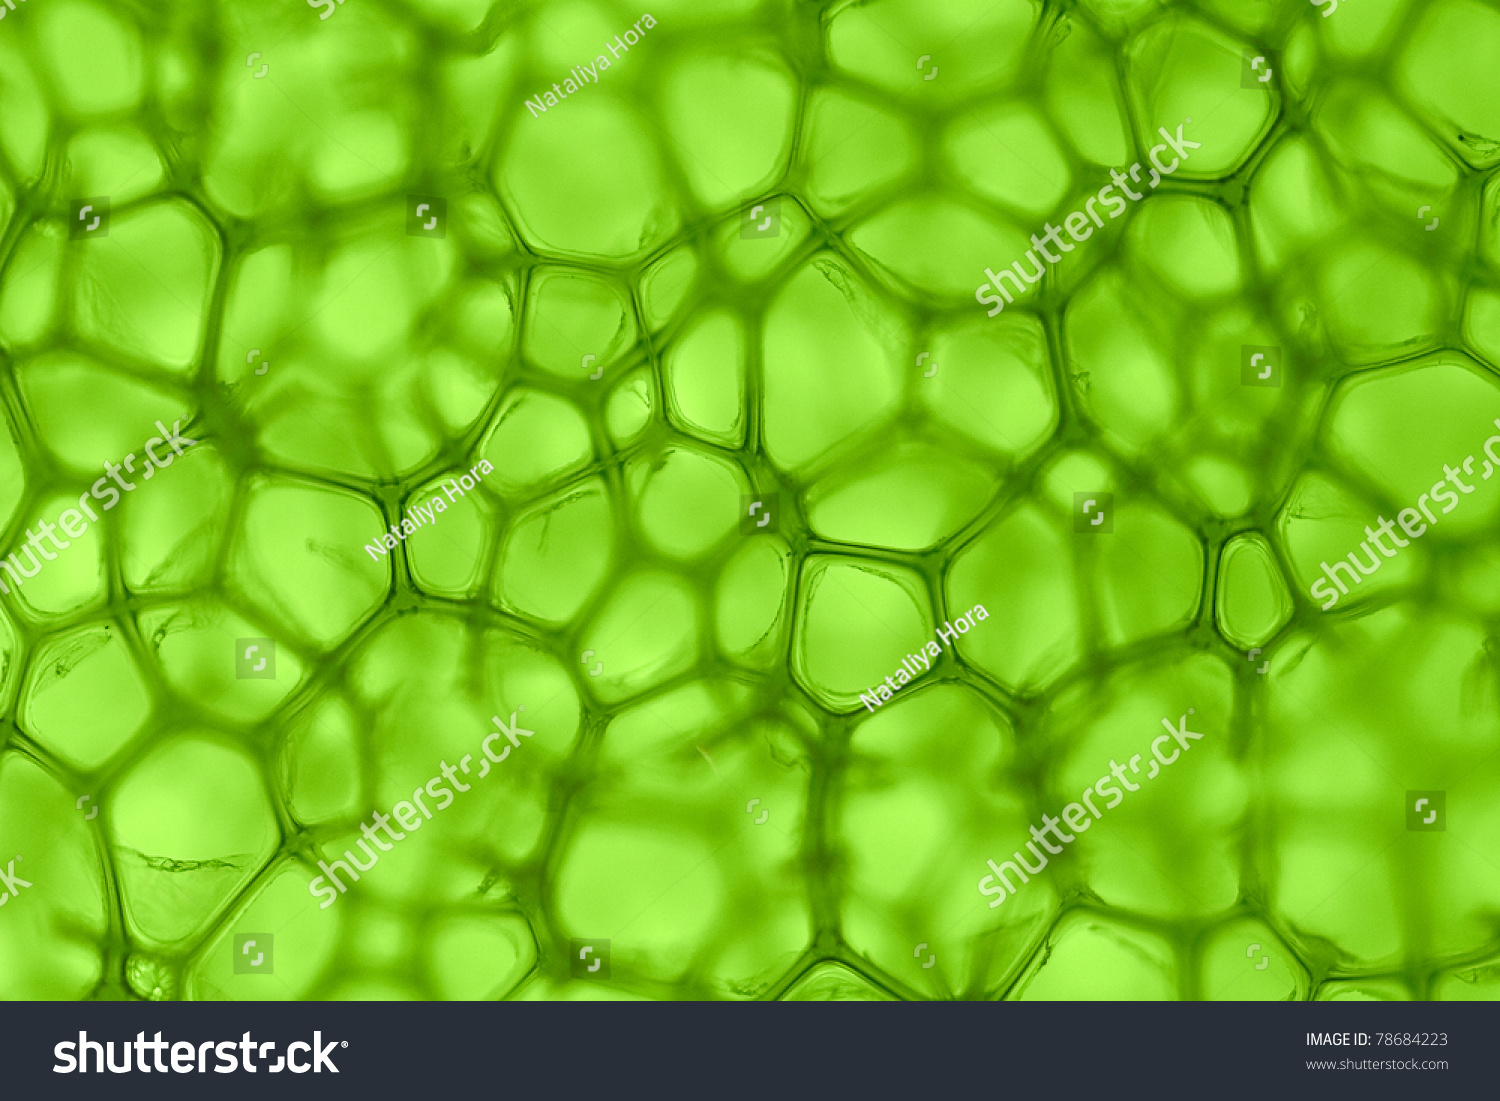 PowerPoint Template: mikrobiologi science - cell green (opnpljjk)